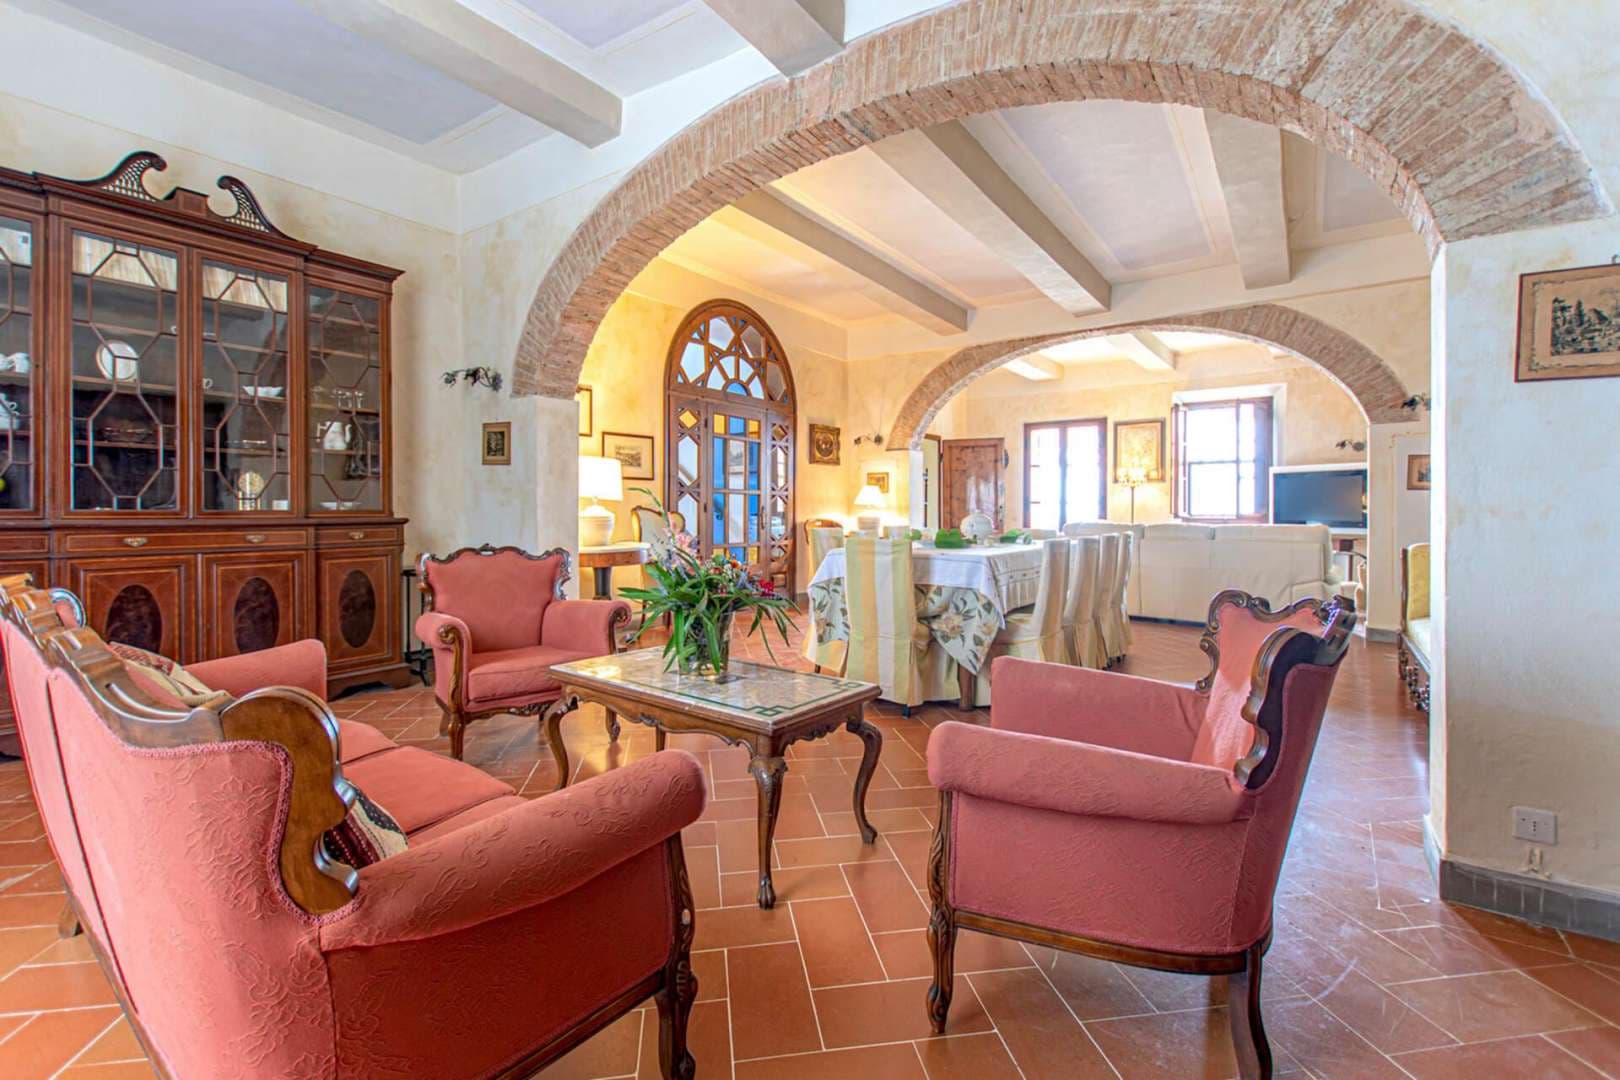 5 Bedroom Villa For Sale Antico Borgo Chianti Classico Lp04993 2439ed57b1b3e800.jpg